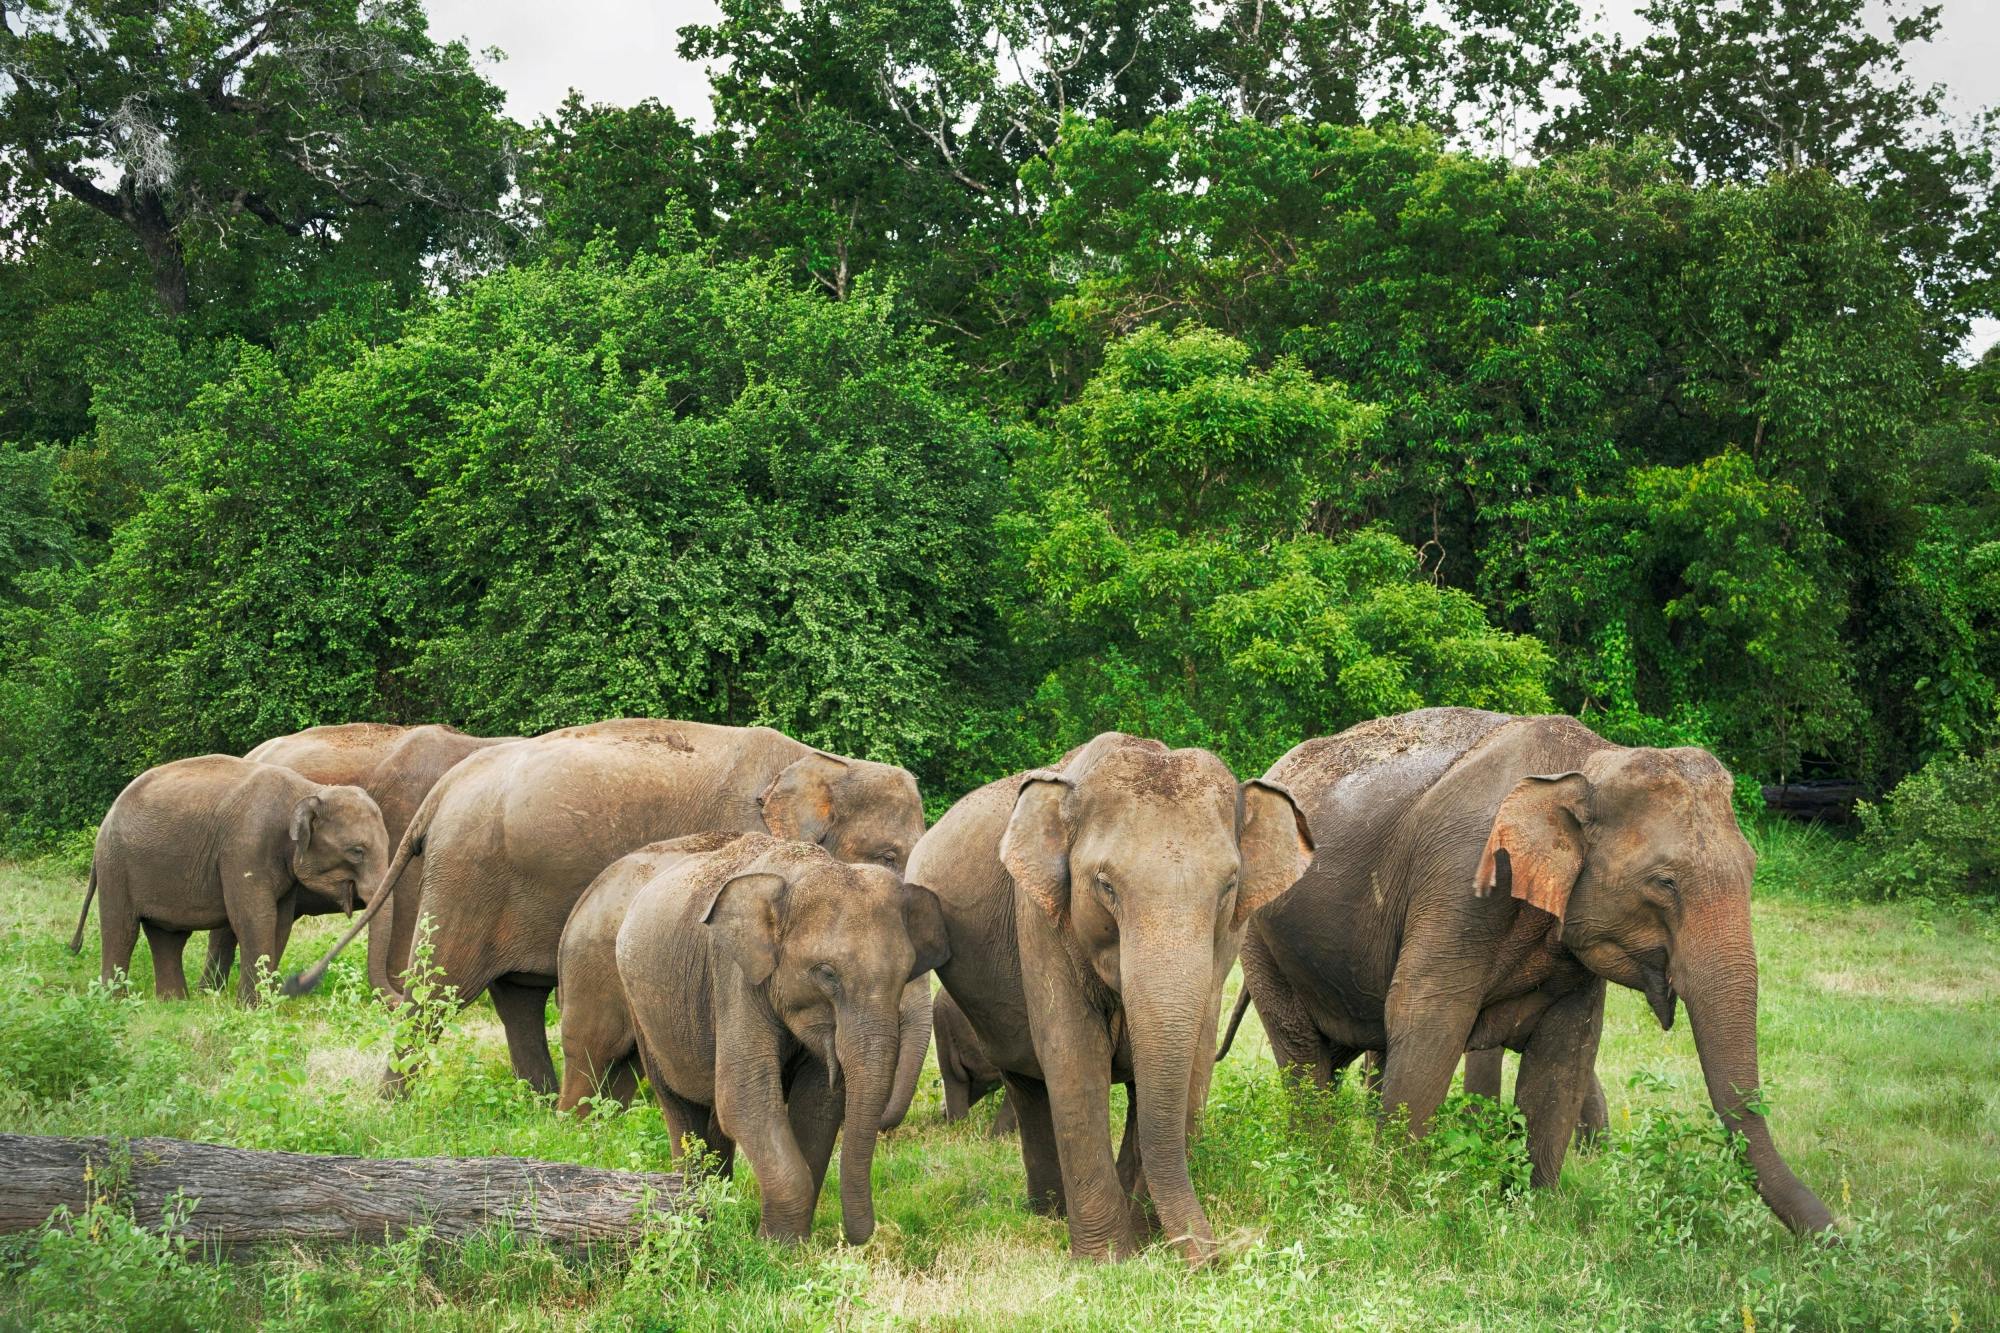 Kandy, Sigiriya, Dambulla & Minneriya Park Safari Two-day Tour from the East Coast